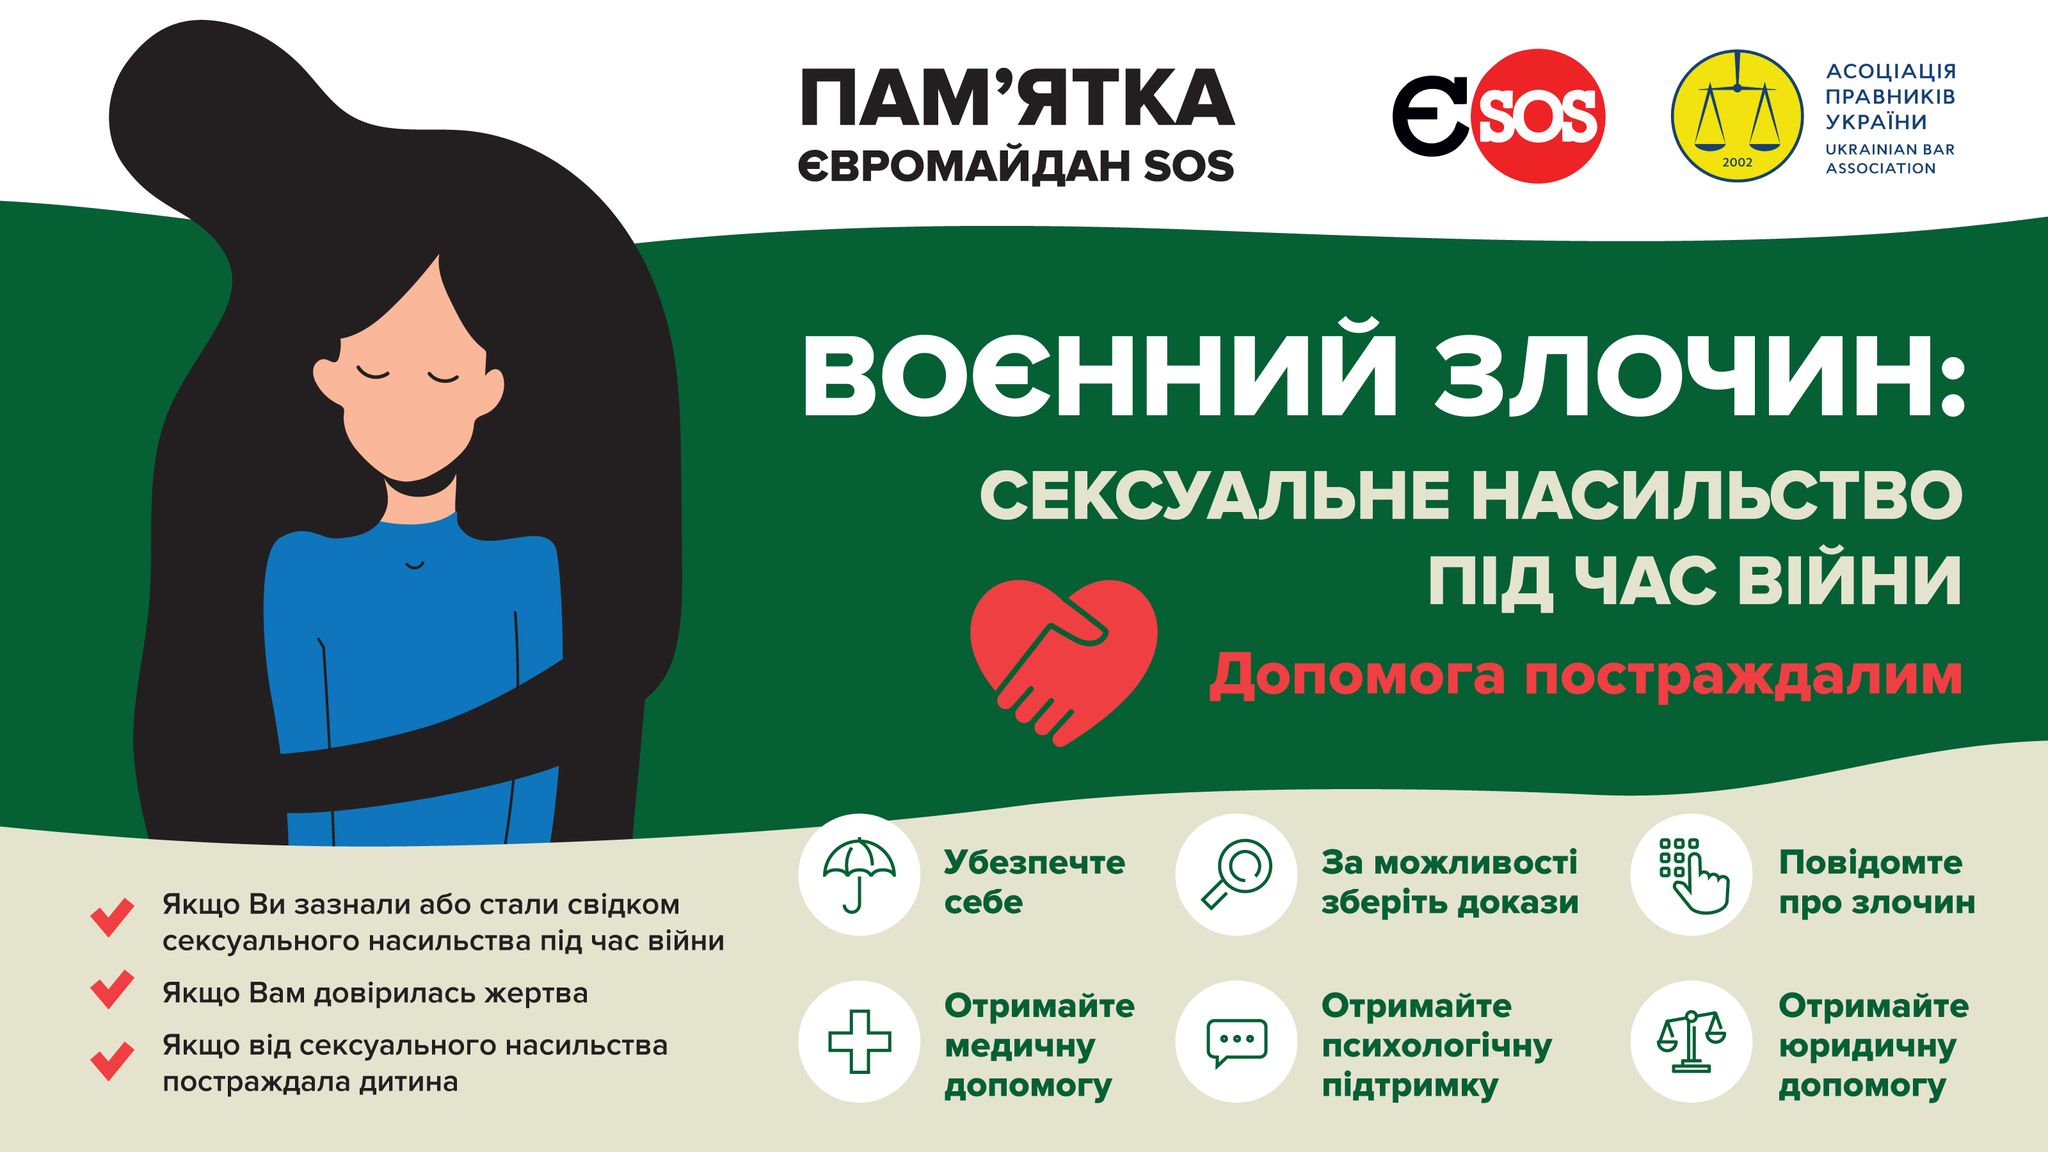 Пам’ятка Євромайдан SOS: для людей, які пережили сексуальне насильство